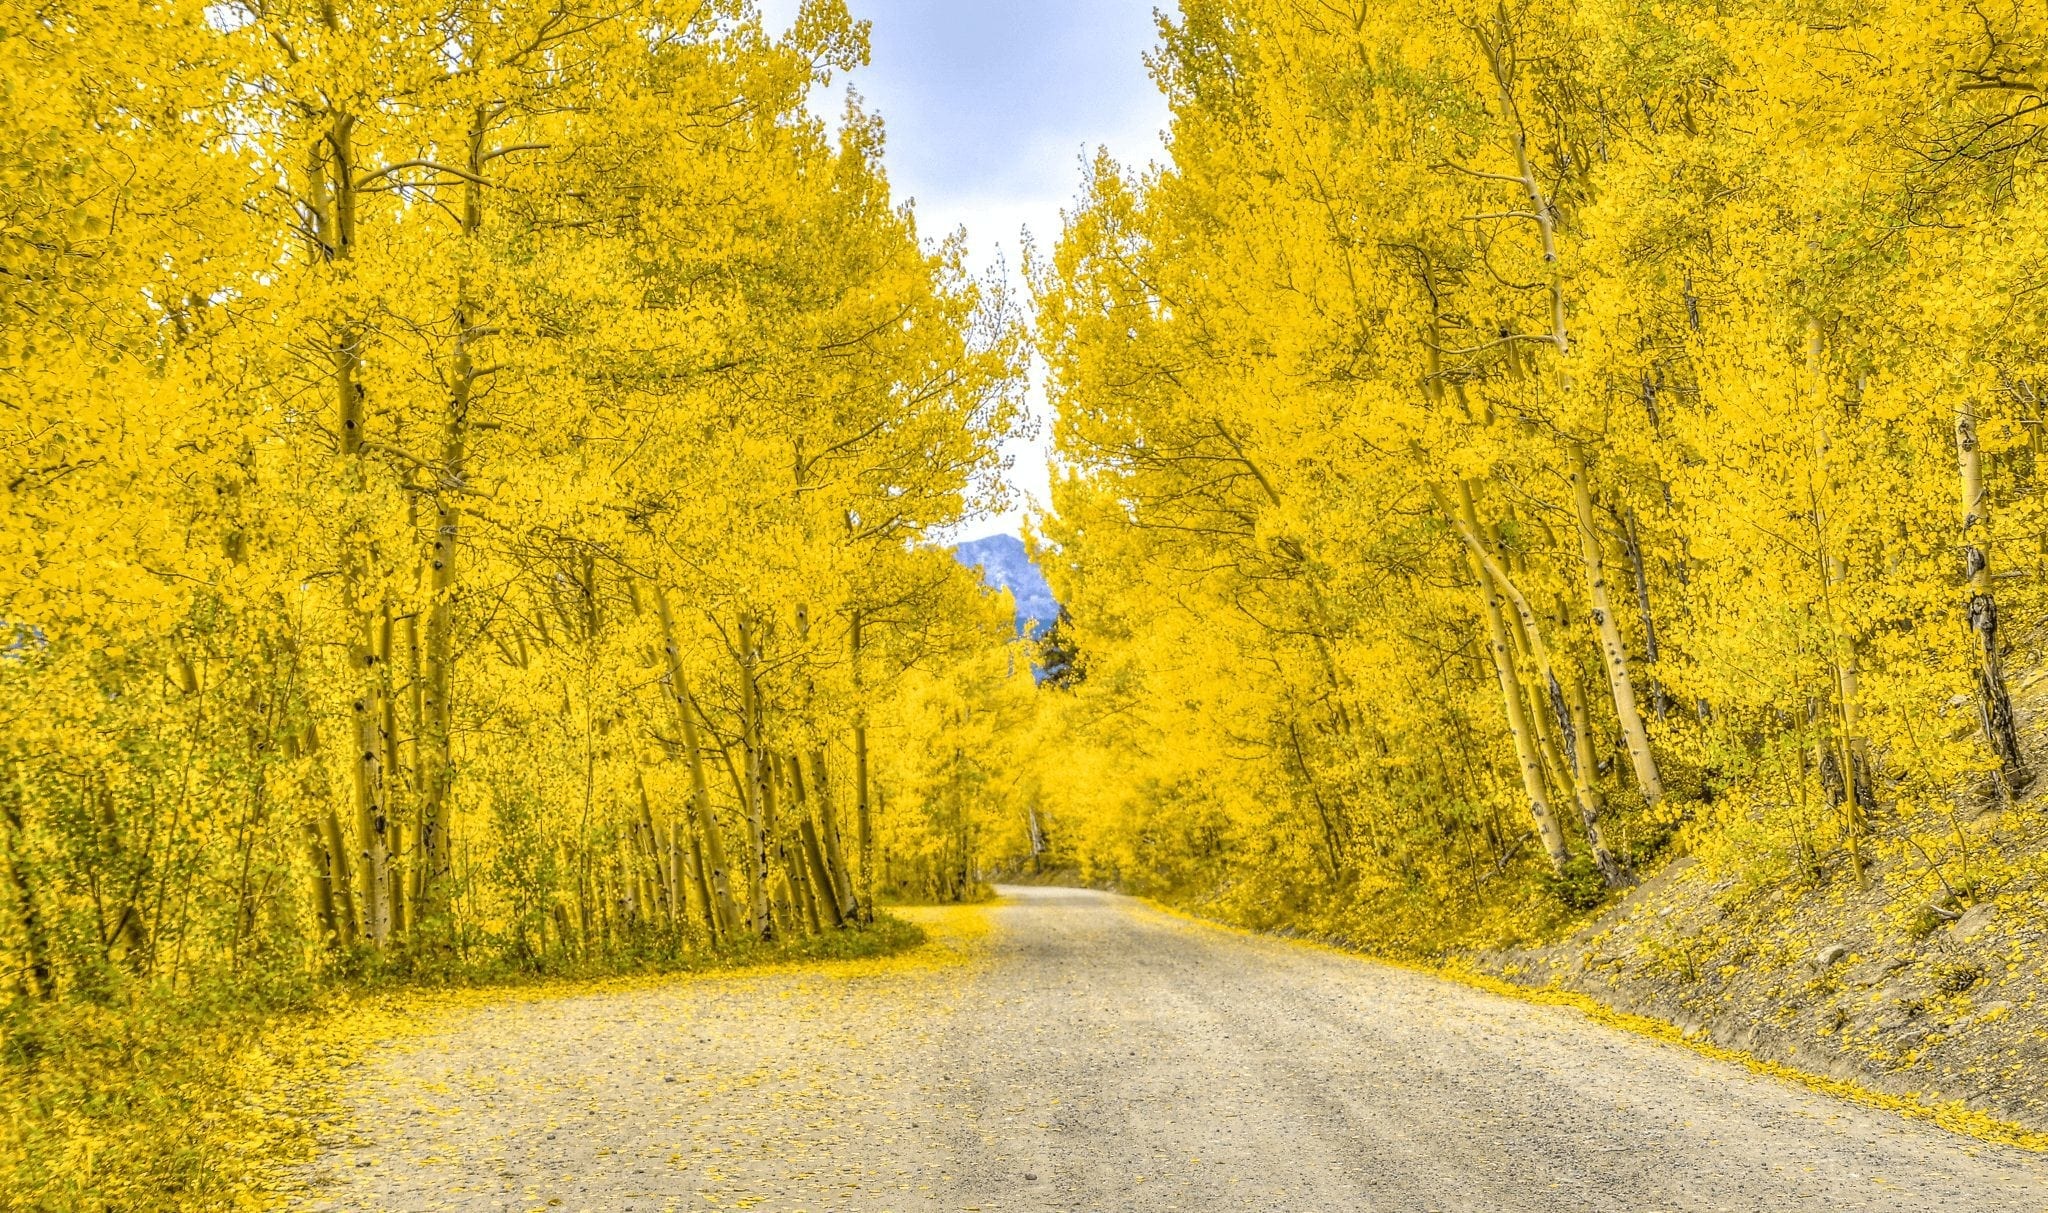 Breckenridge's Boreas Pass Road in Fall with aspen foliage